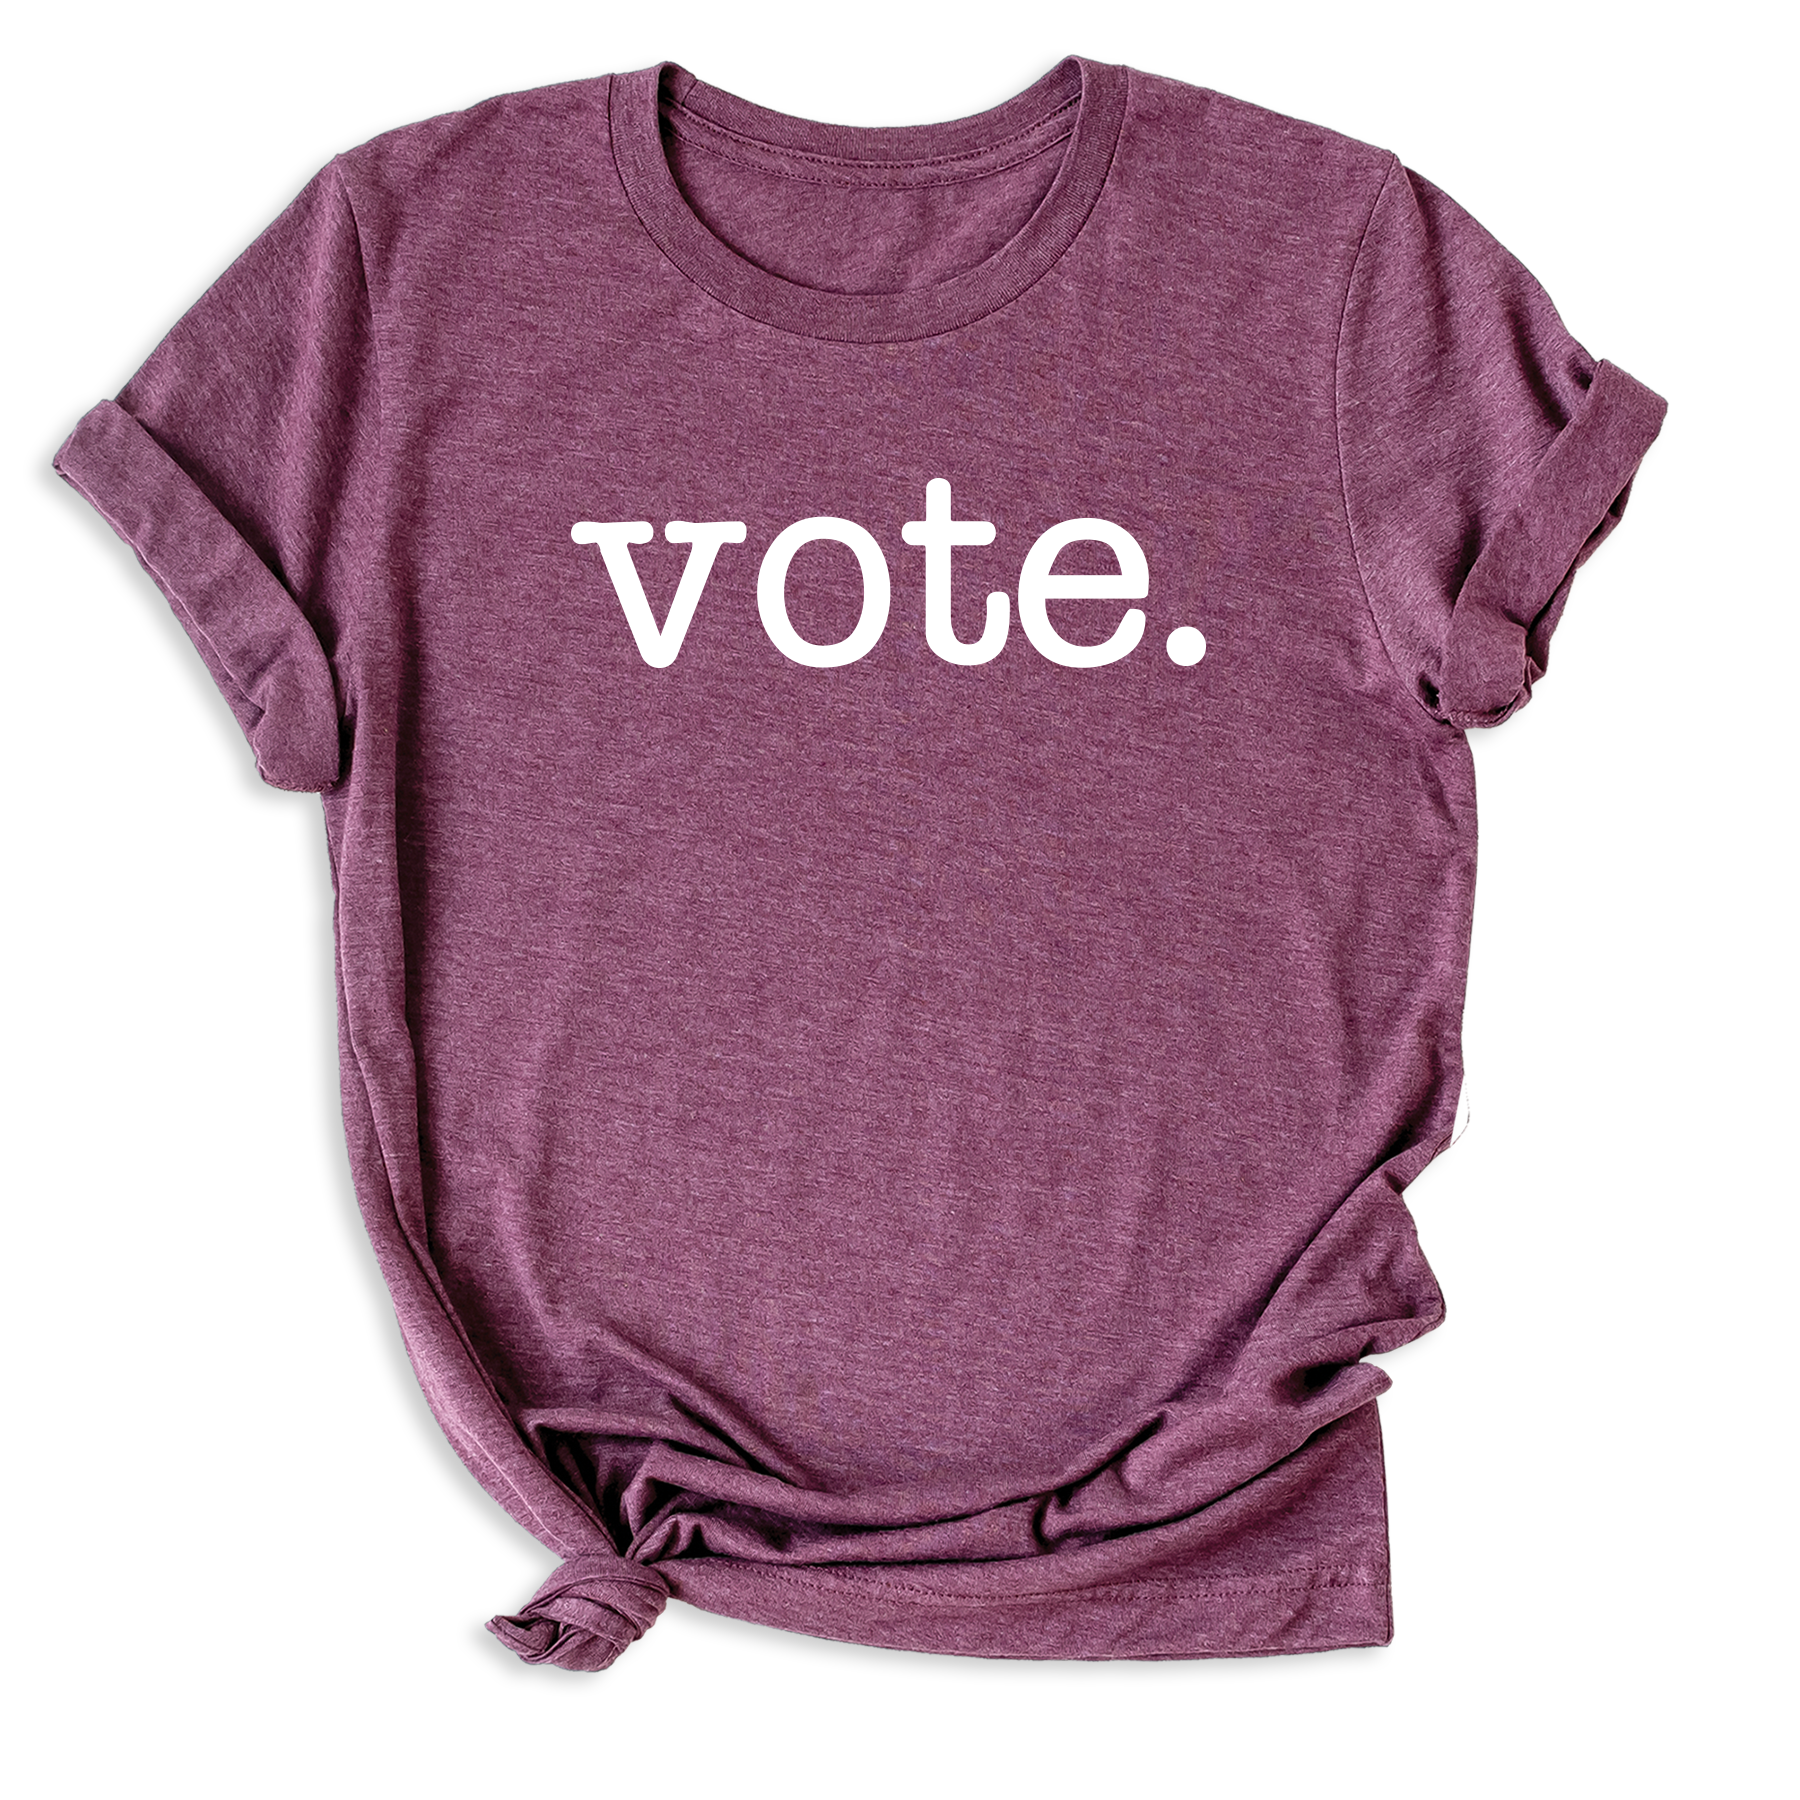 women vote shirts